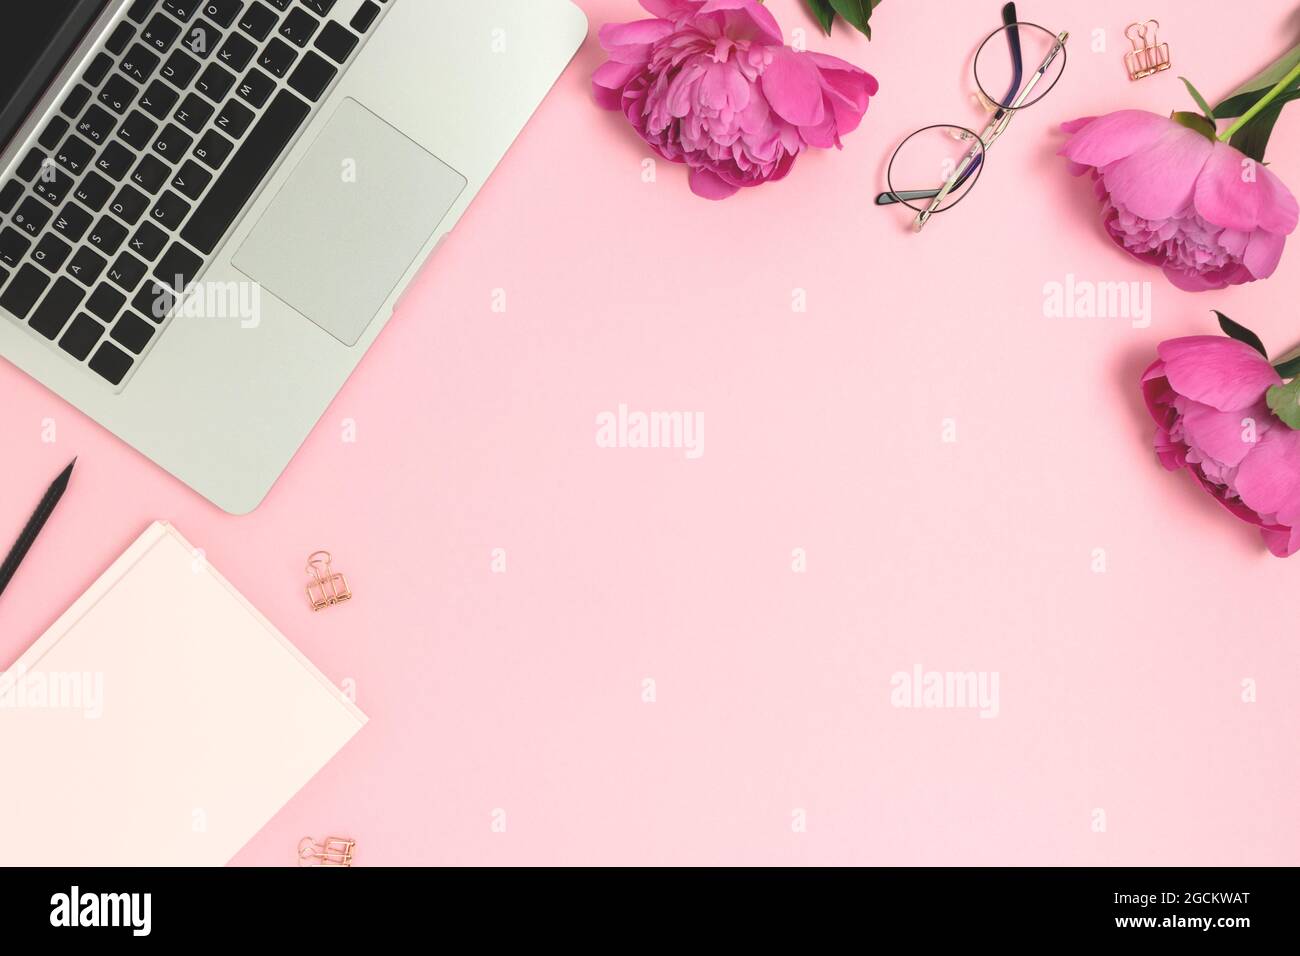 Bạn muốn thay đổi không gian làm việc của mình trở nên dễ chịu hơn và đáng yêu hơn? Đến ngay với bộ sưu tập hình nền văn phòng dễ thương của chúng tôi, với màu hồng tươi tắn, dàn laptop, đồ dùng học tập và hoa vừa đủ tạo cảm hứng cho bạn thấy yêu thích công việc của mình hơn.